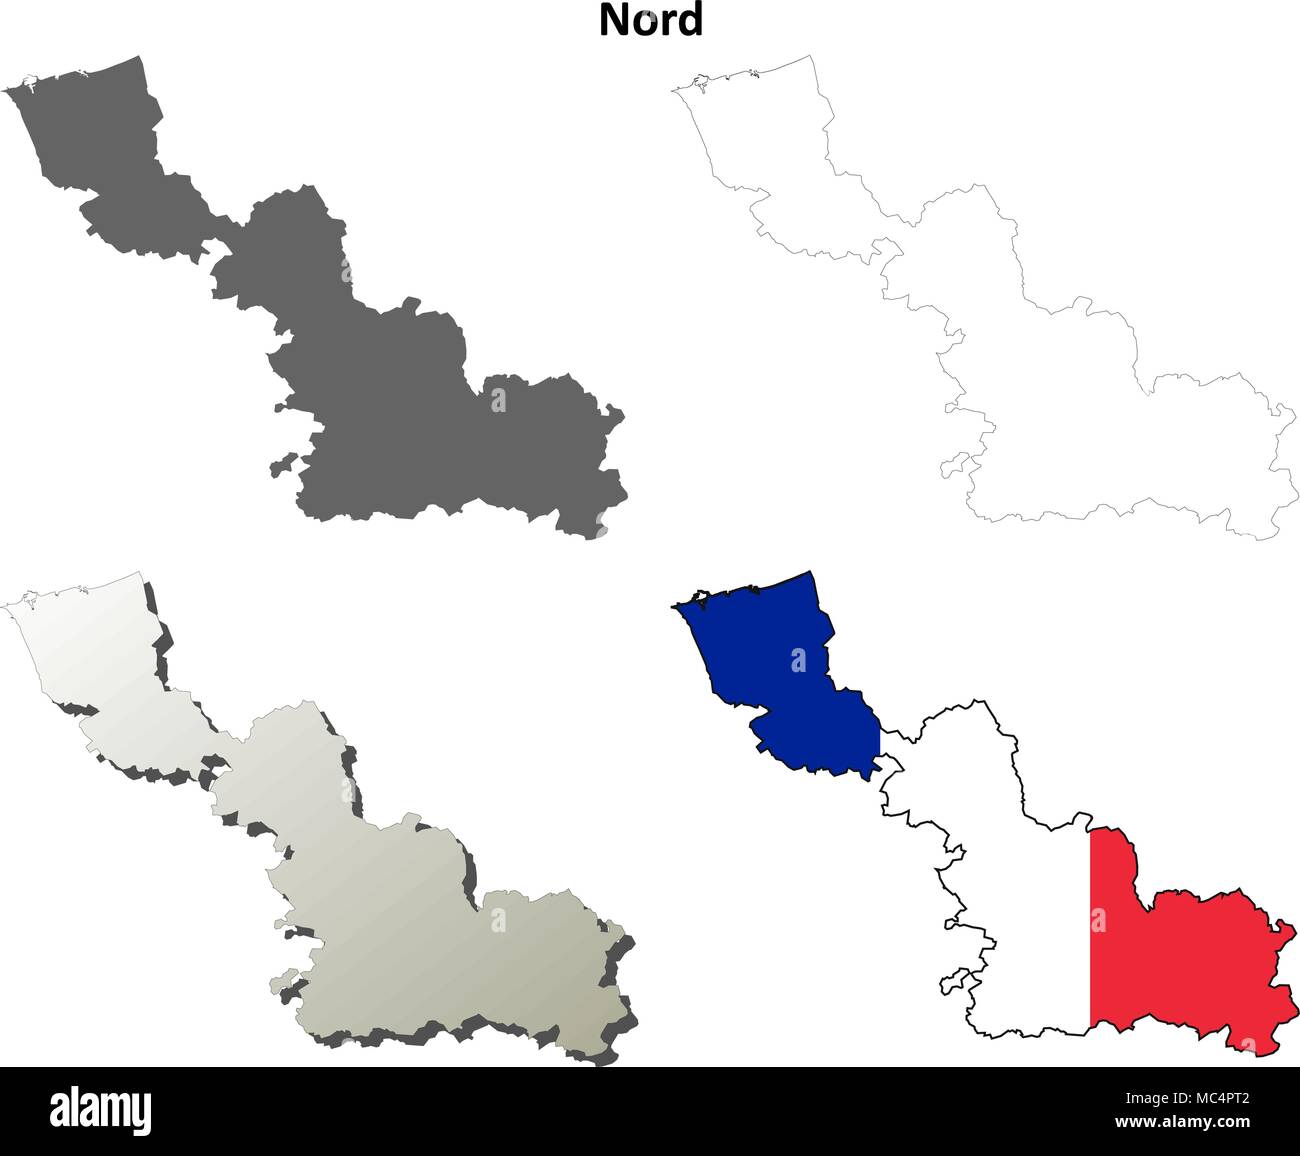 Nord, Ile-de-France Description de l'ensemble de cartes Illustration de Vecteur